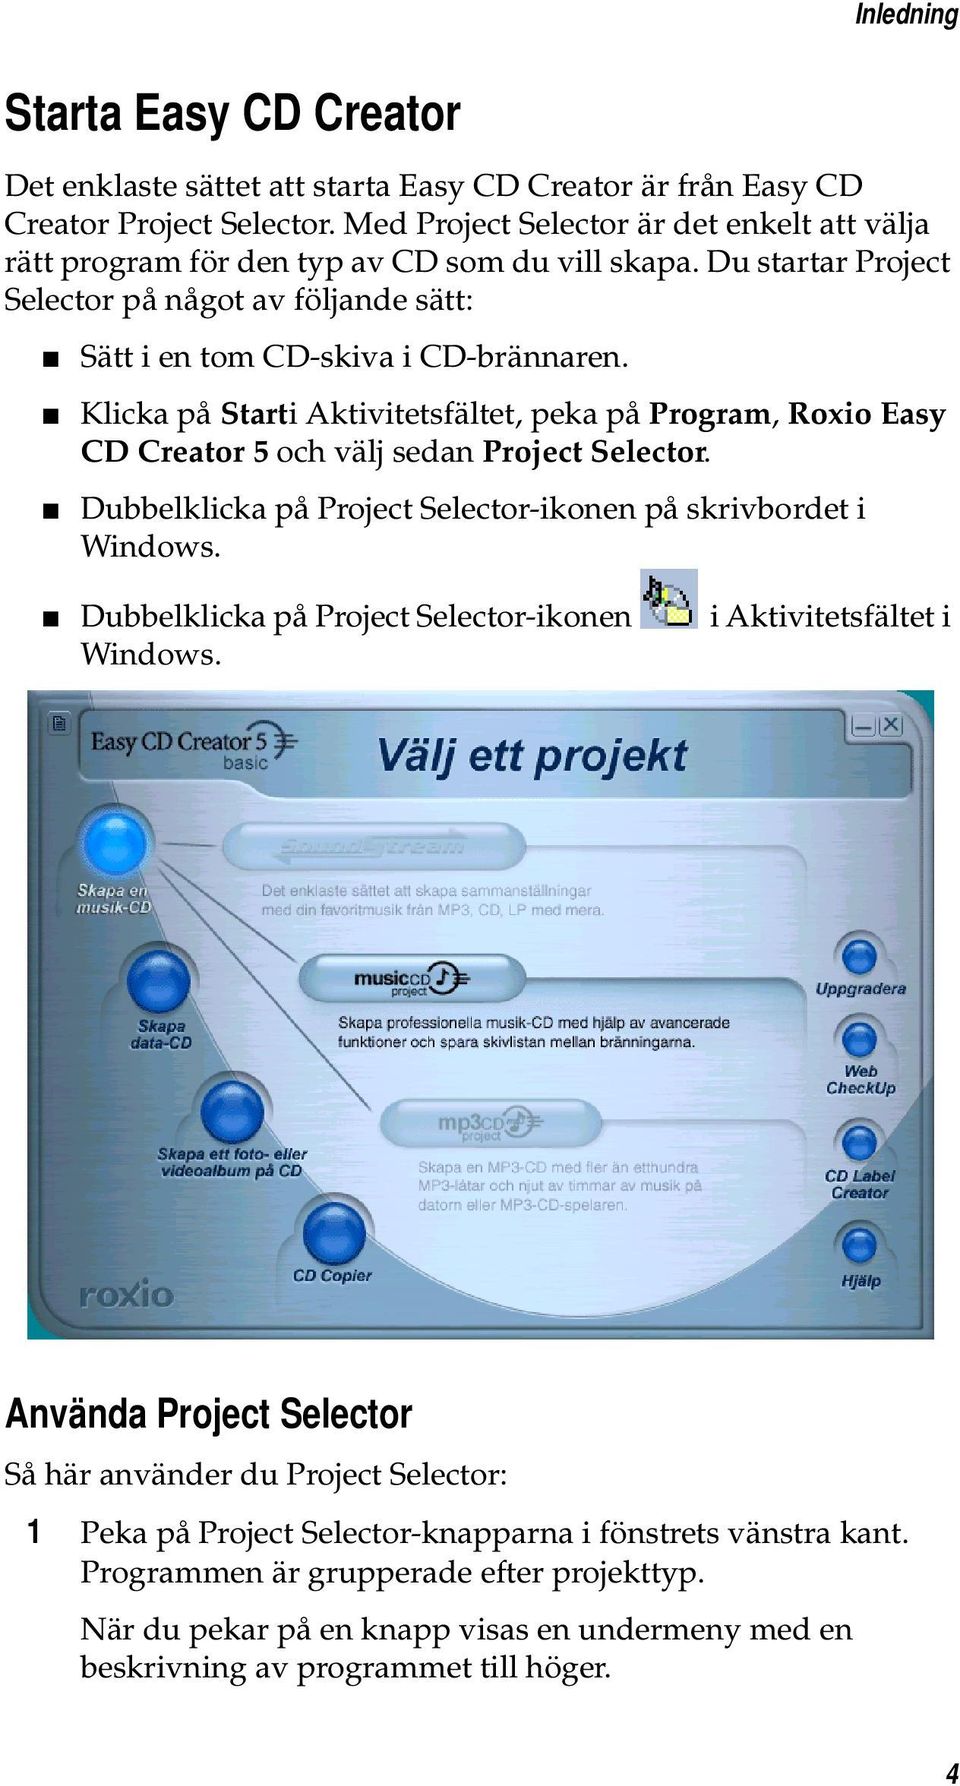 Klicka på Starti Aktivitetsfältet, peka på Program, Roxio Easy CD Creator 5 och välj sedan Project Selector. Dubbelklicka på Project Selector-ikonen på skrivbordet i Windows.